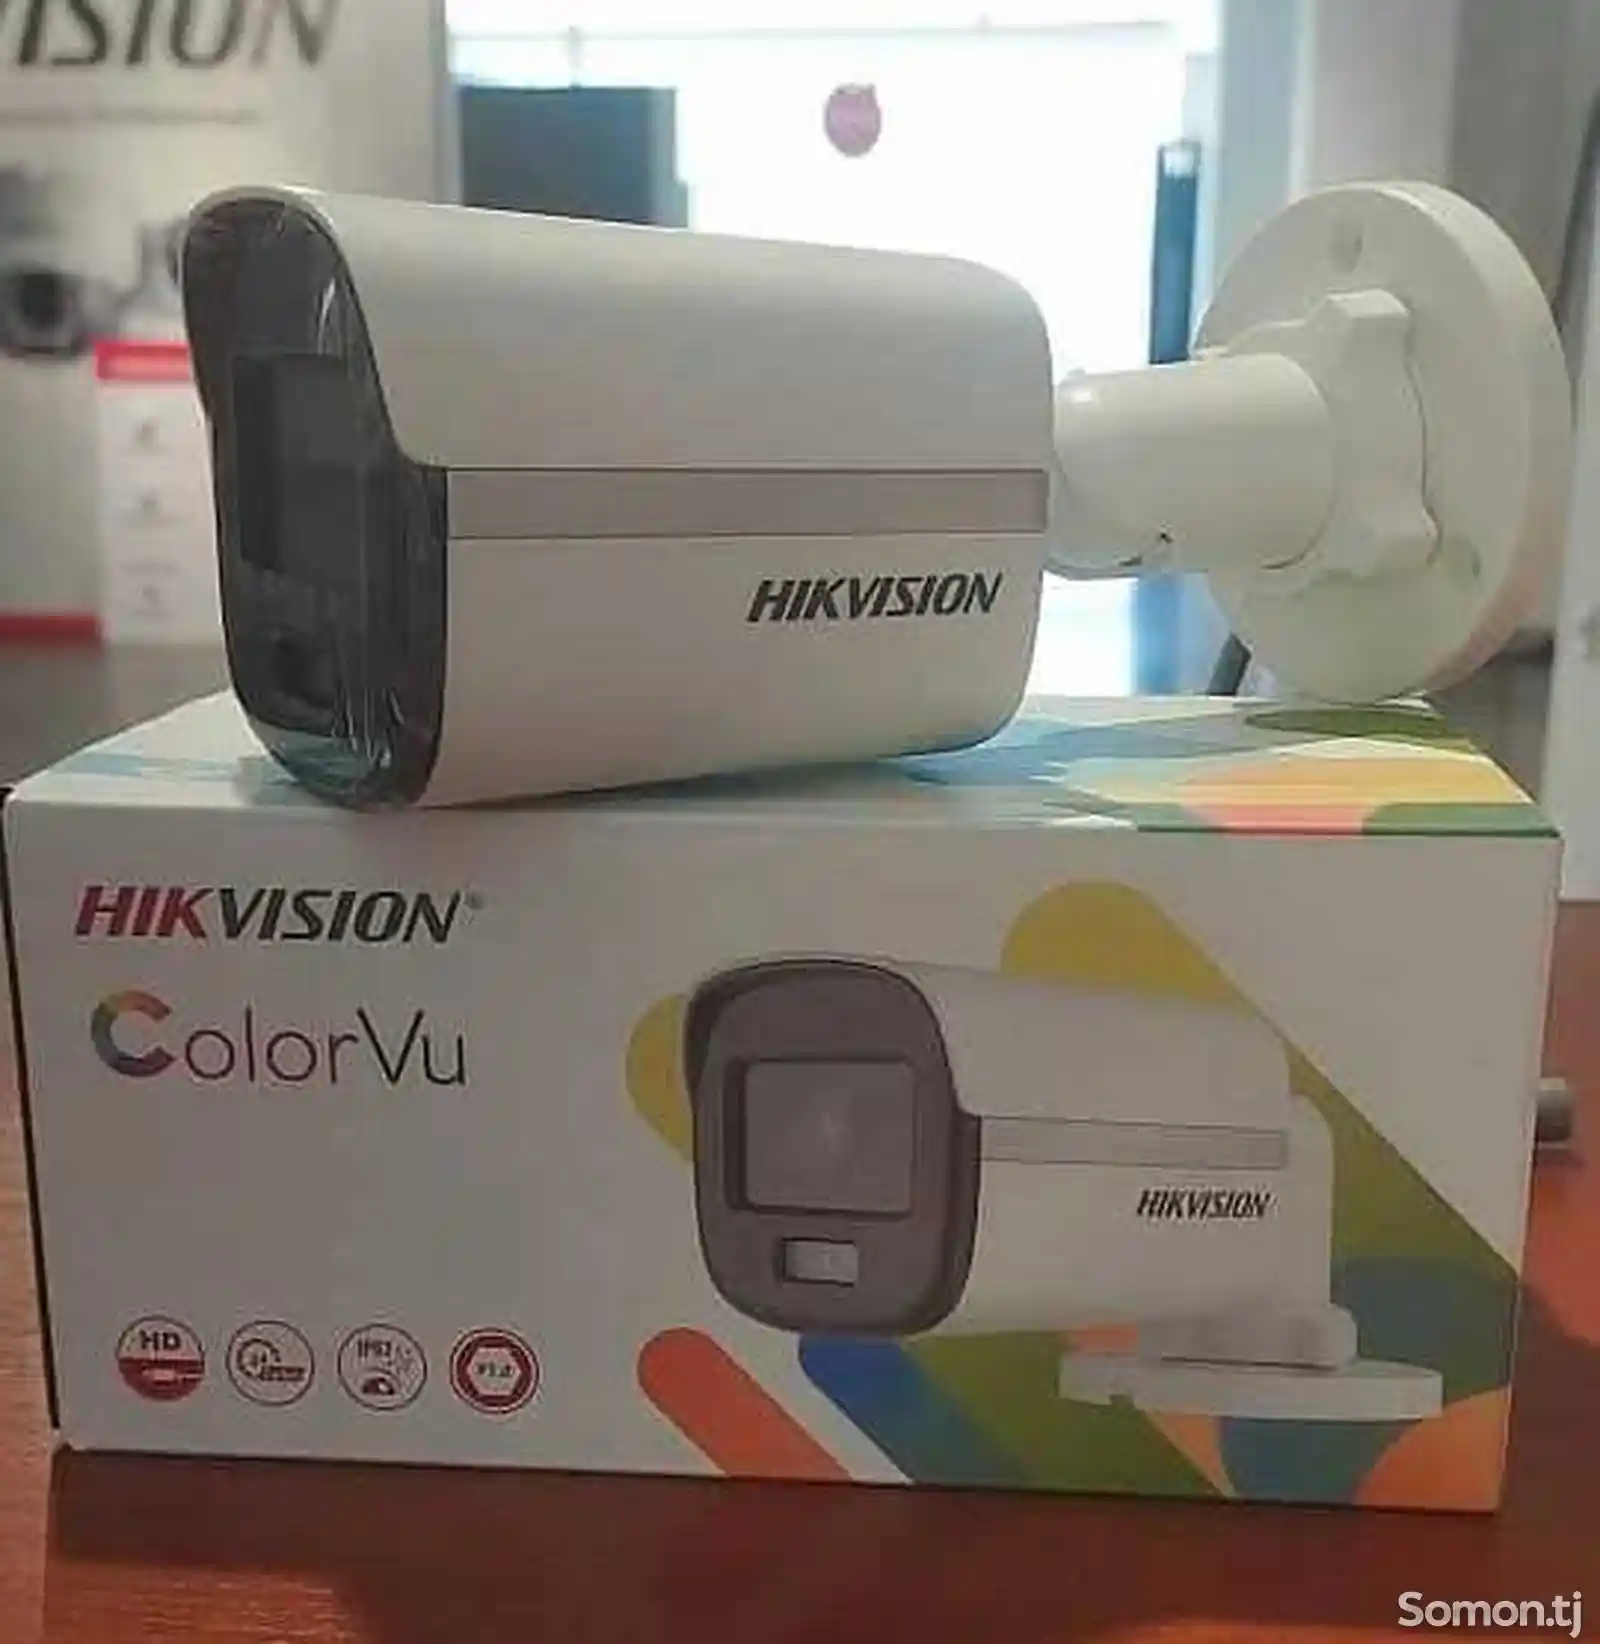 Аналоговая камера Hikvision-2